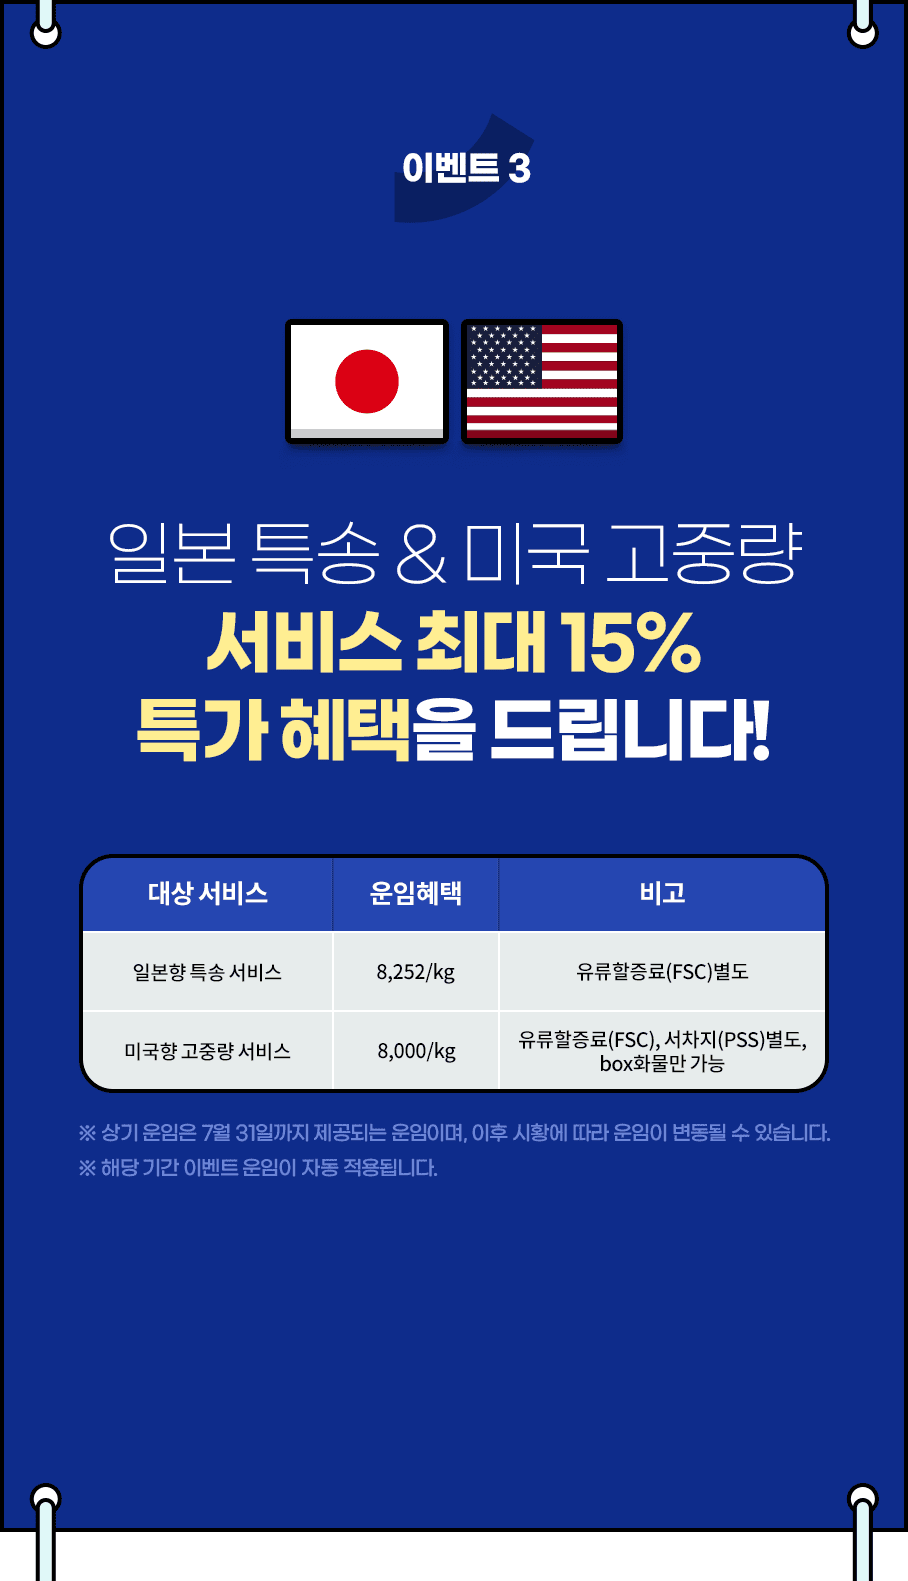 이벤트3 일본 특송 & 미국 고중량 서비스 최대 15% 특가 혜택을 드립니다!